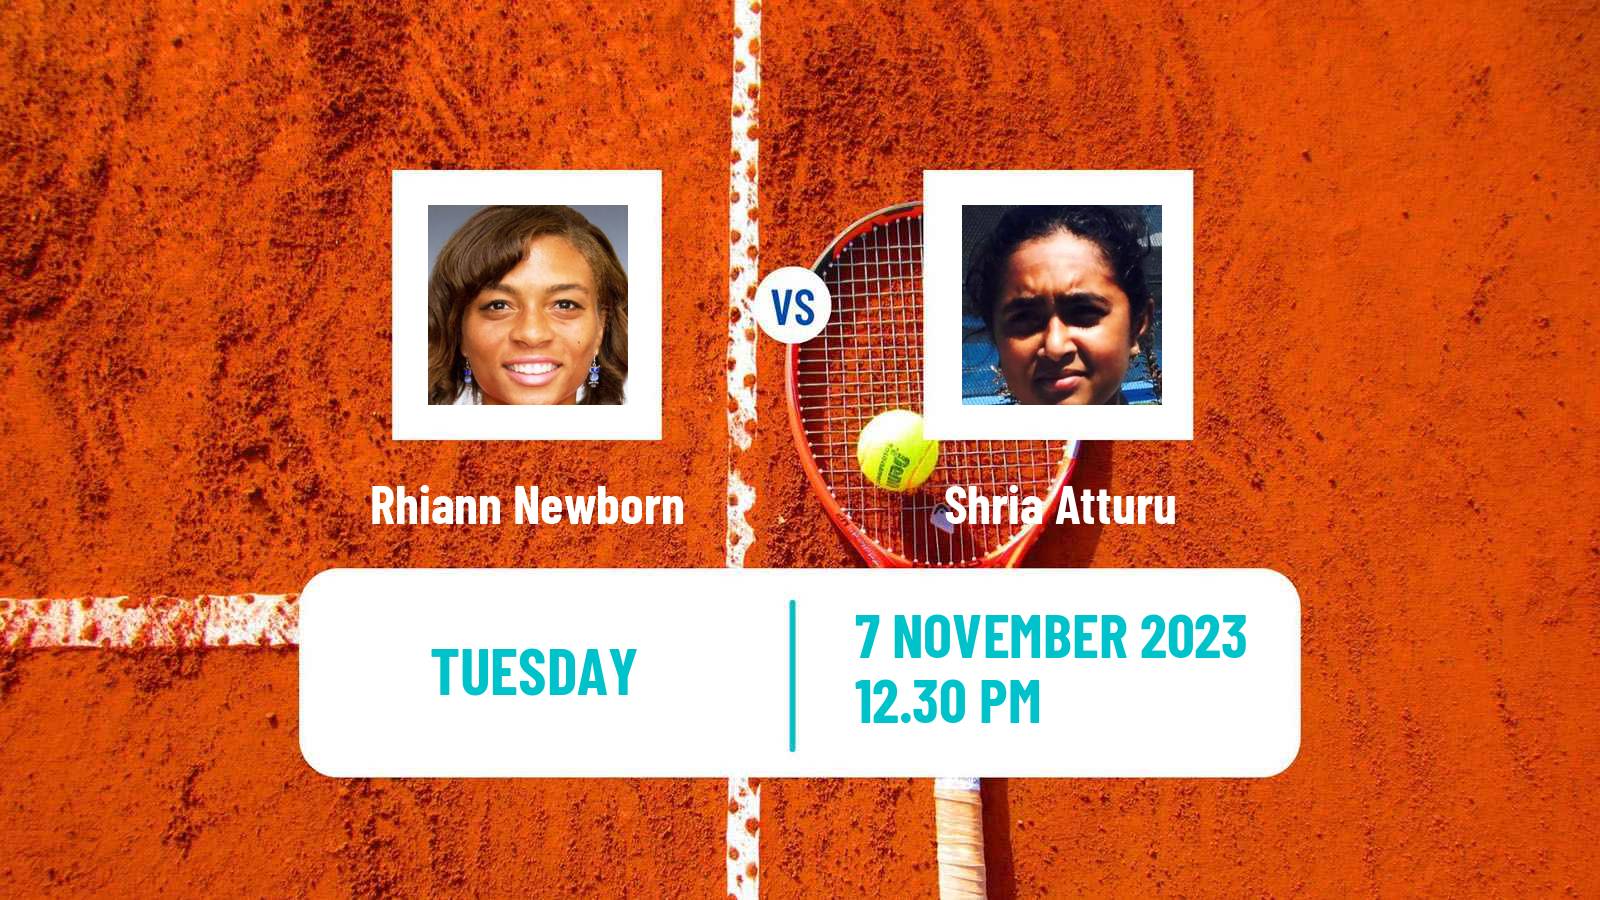 Tennis ITF W15 Champaign Il Women 2023 Rhiann Newborn - Shria Atturu